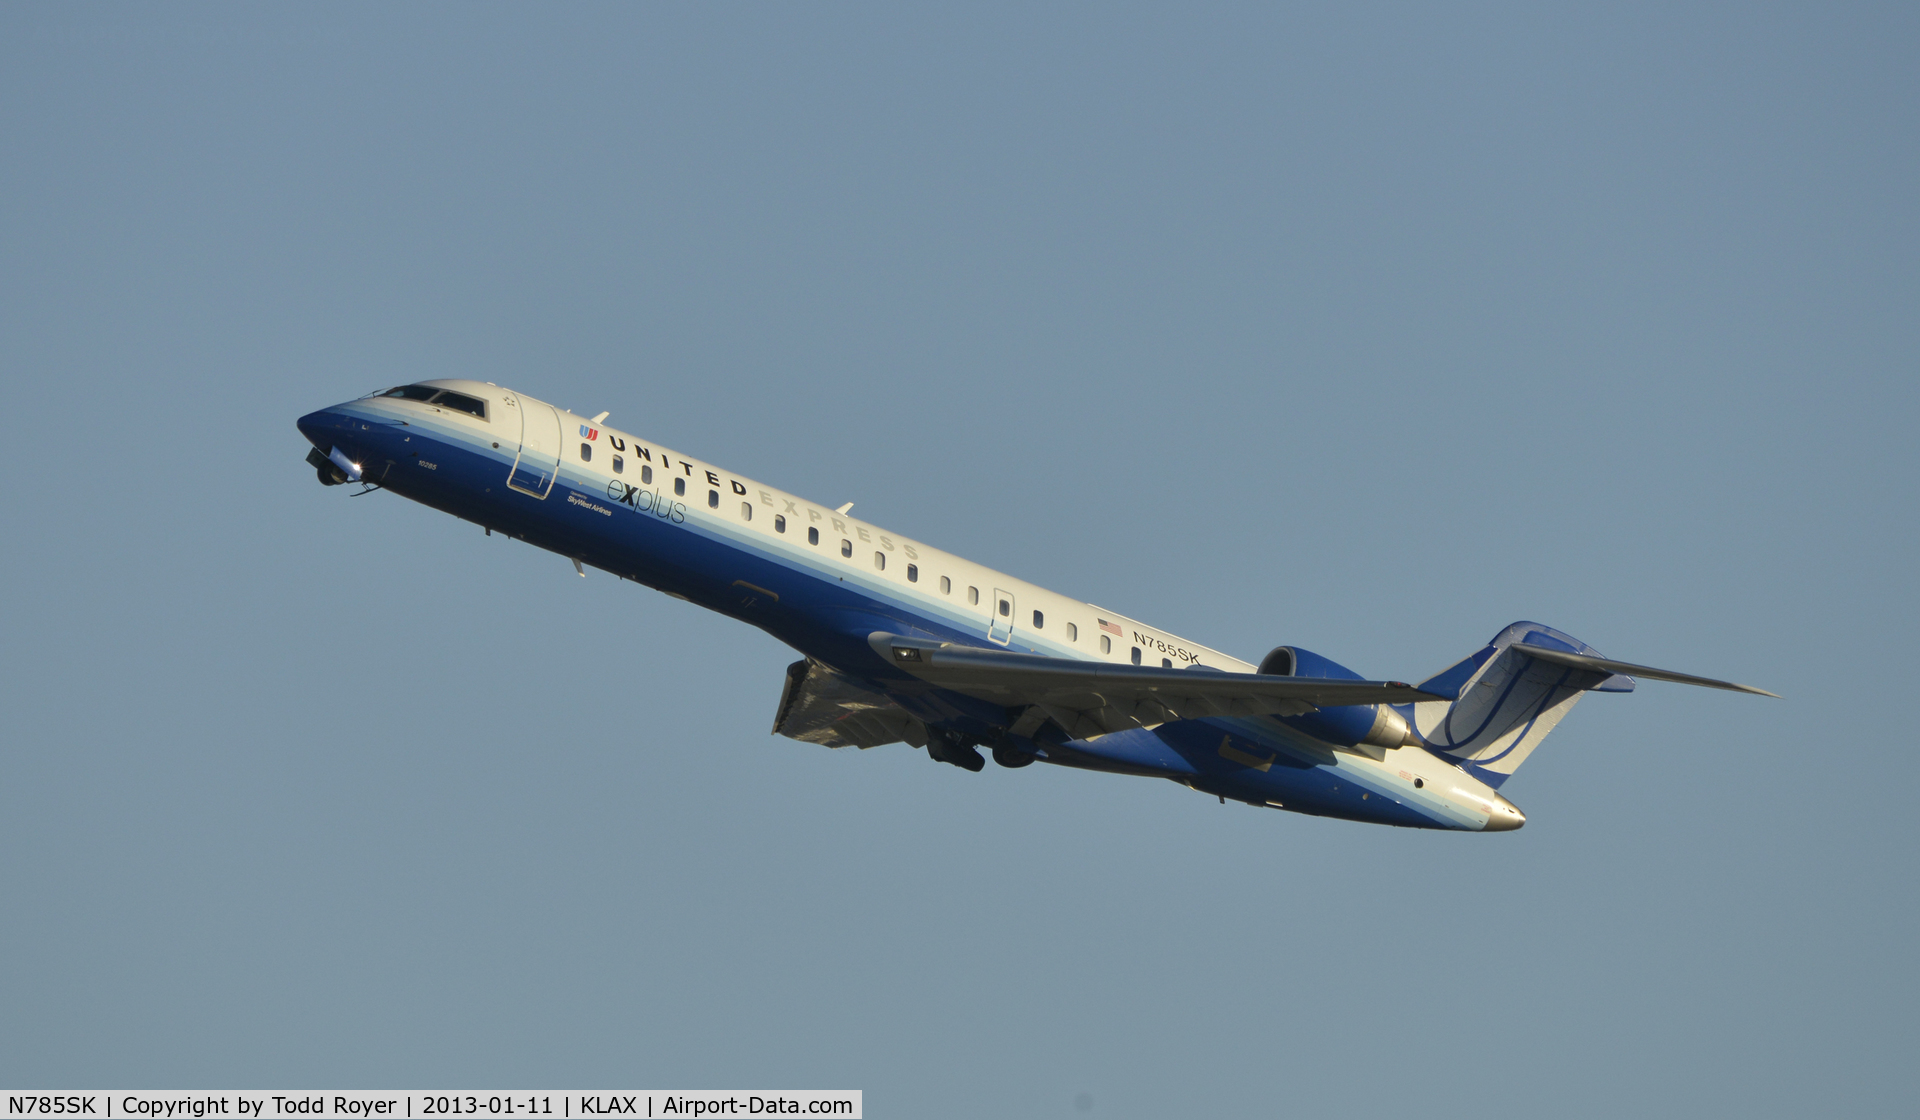 N785SK, 2009 Bombardier CRJ-700 (CL-600-2C10) Regional Jet C/N 10285, Departing LAX